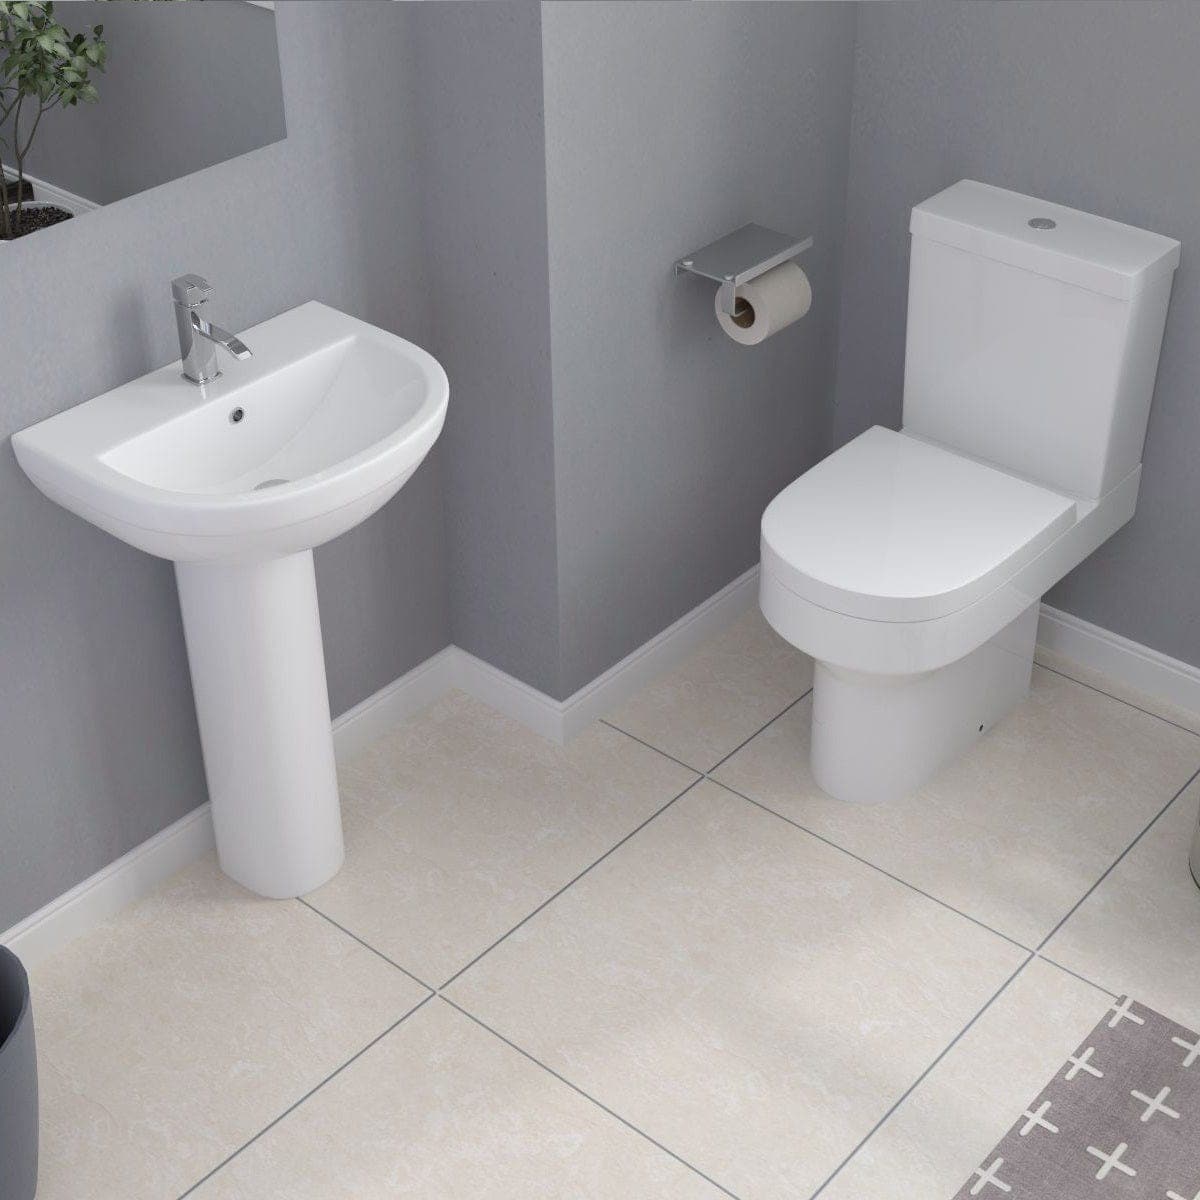 iBathUK Toilets > Close Coupled Toilets Rimini Ceramic Close Coupled Toilet - White